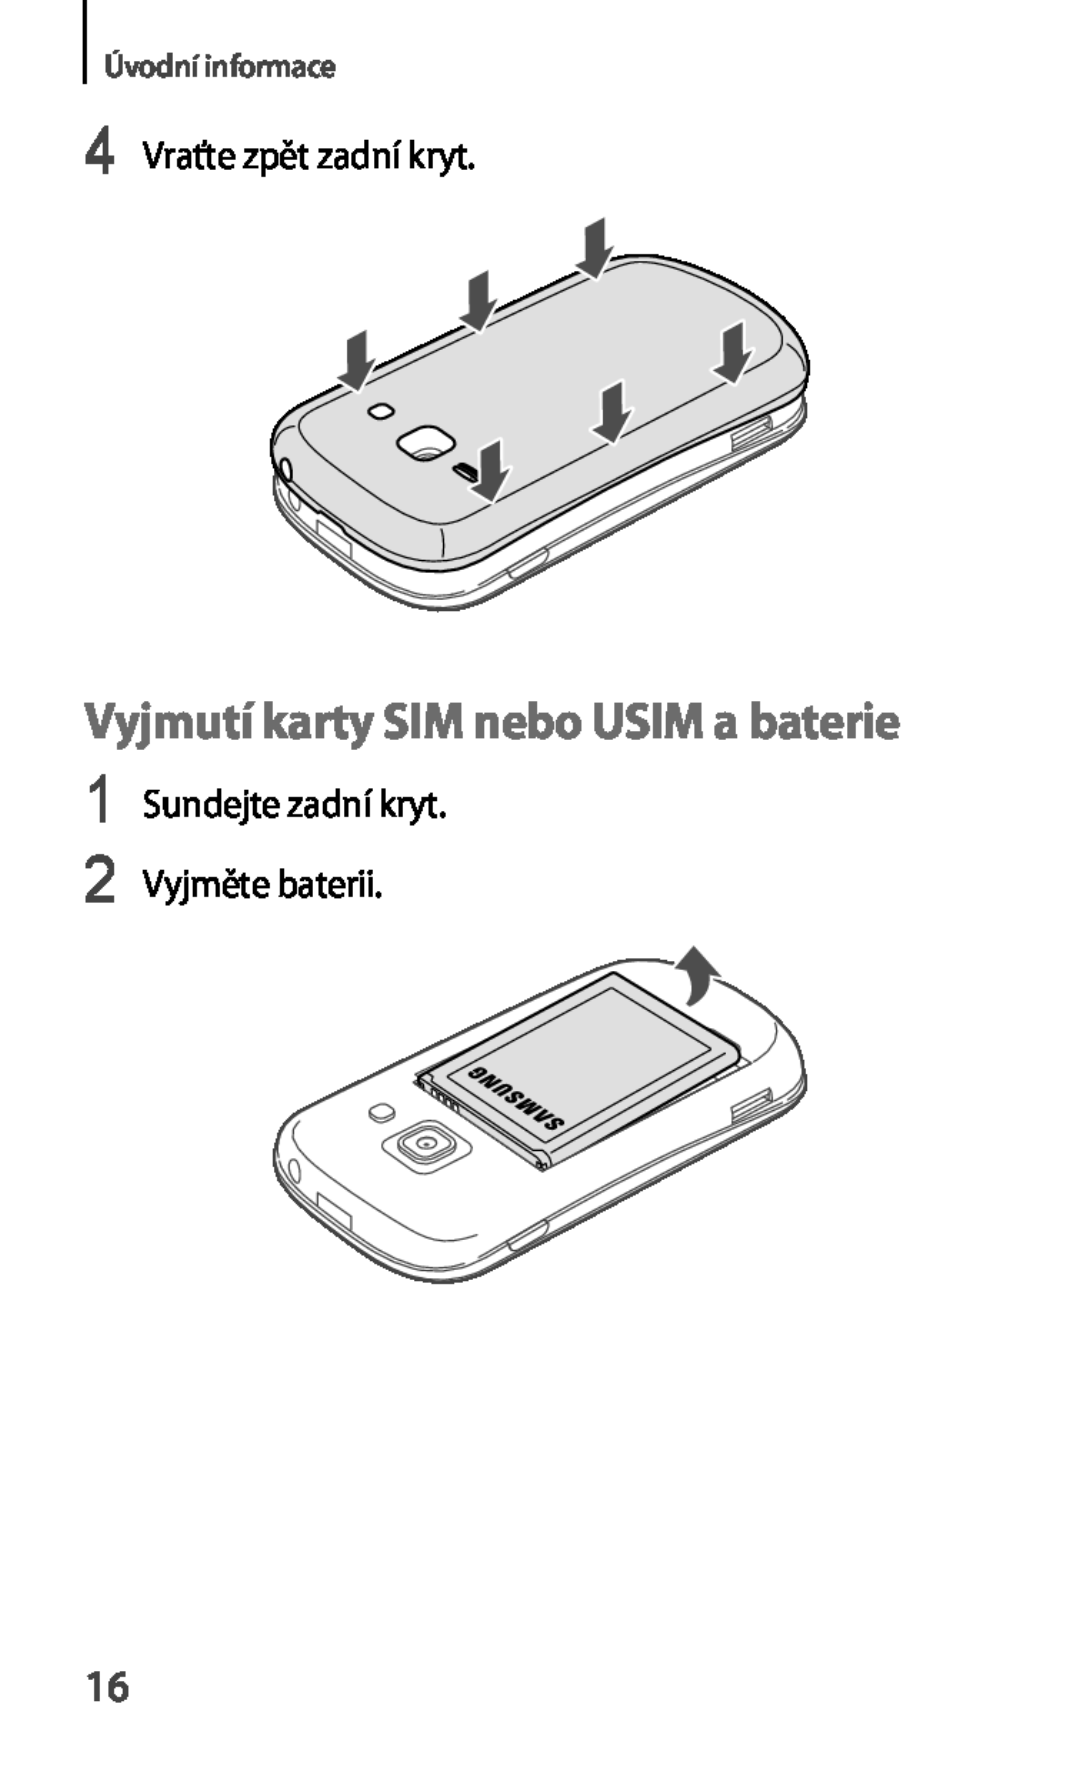 Samsung GT-S6810PWNORX, GT-S6810MBNEUR Vyjmutí karty SIM nebo USIM a baterie, 4 Vraťte zpět zadní kryt, Úvodní informace 